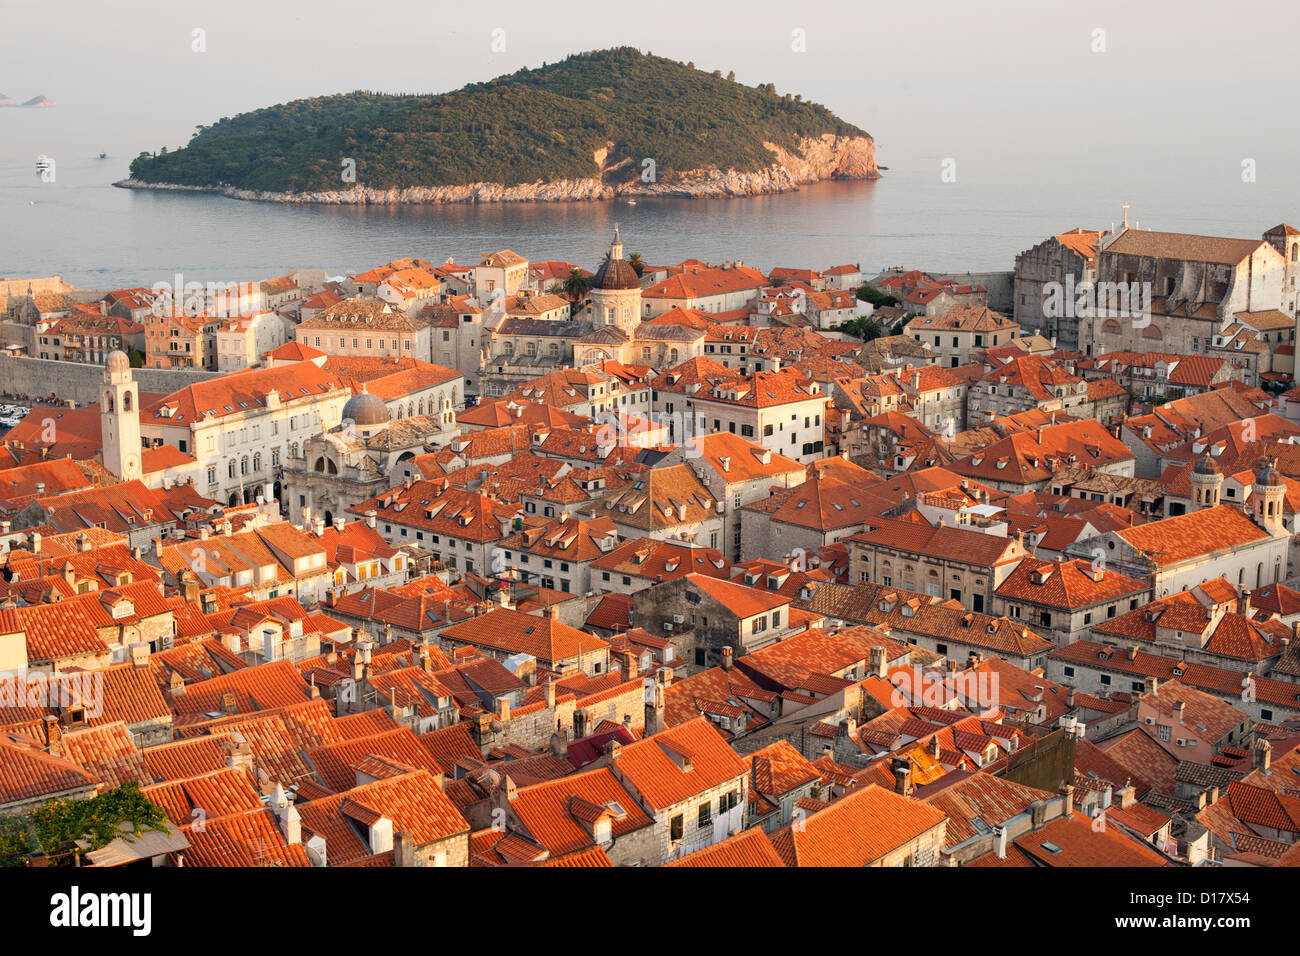 Vistas de los tejados del casco antiguo de la ciudad de Dubrovnik, en la costa adriática de Croacia. También se puede ver la isla de Lokrum. Foto de stock